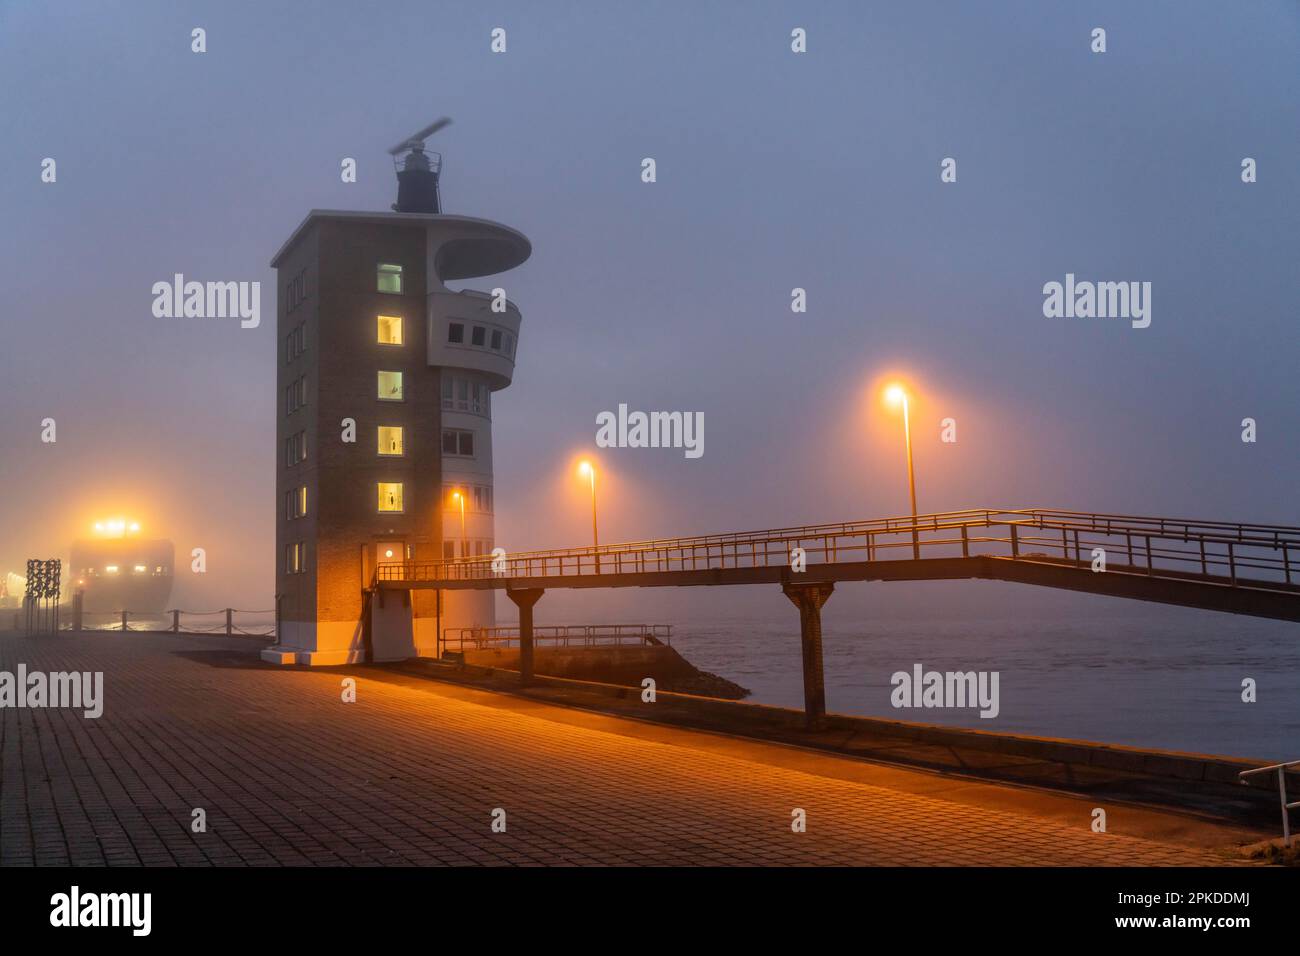 Nebbia fitta in inverno, pende sulla bocca dell'Elba nel Mare del Nord, torre radar dell'autorità per l'acqua e la navigazione (WSA) Cuxhaven, monito radar Foto Stock